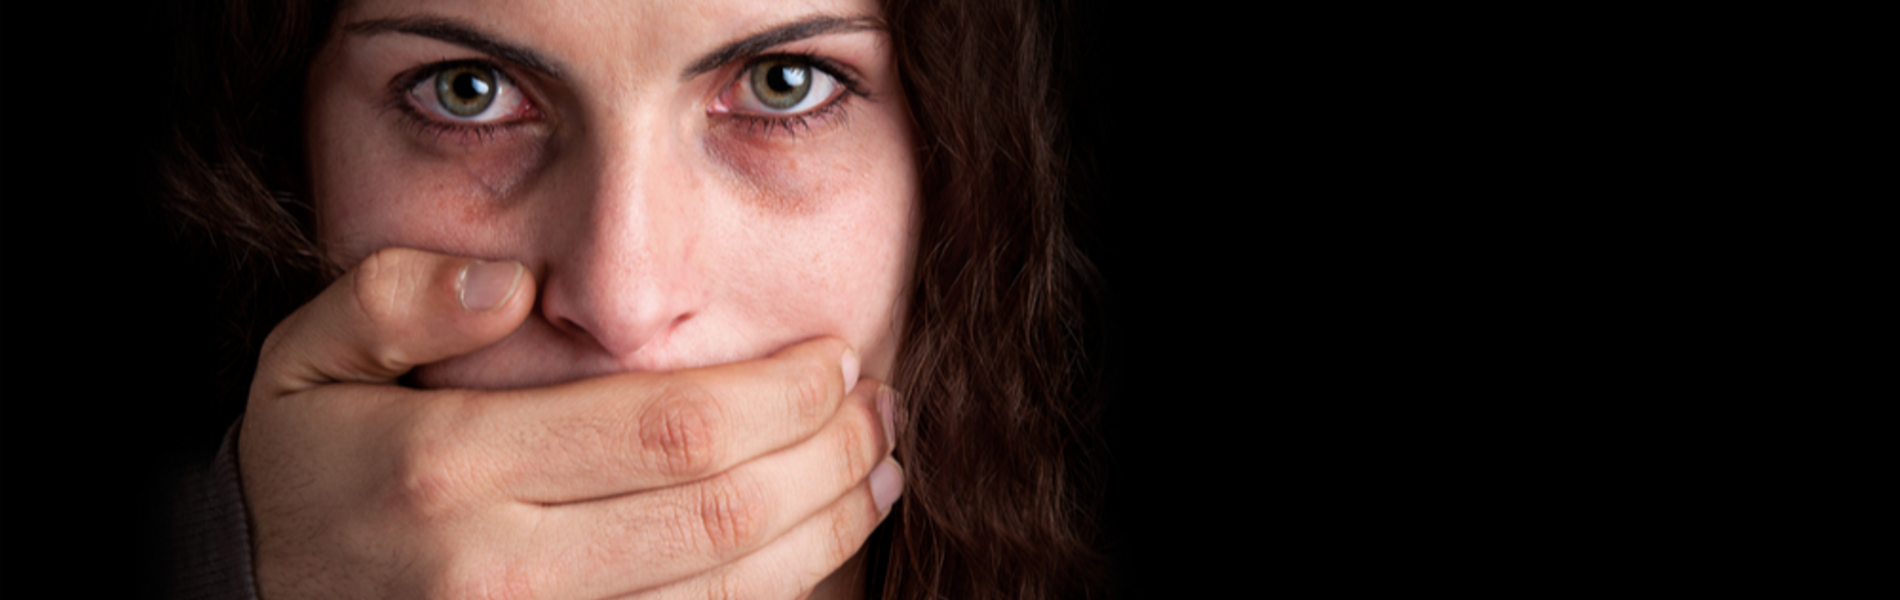 פגיעה מינית במגזר הדתי – אל תשתיקו ואל תשתקו